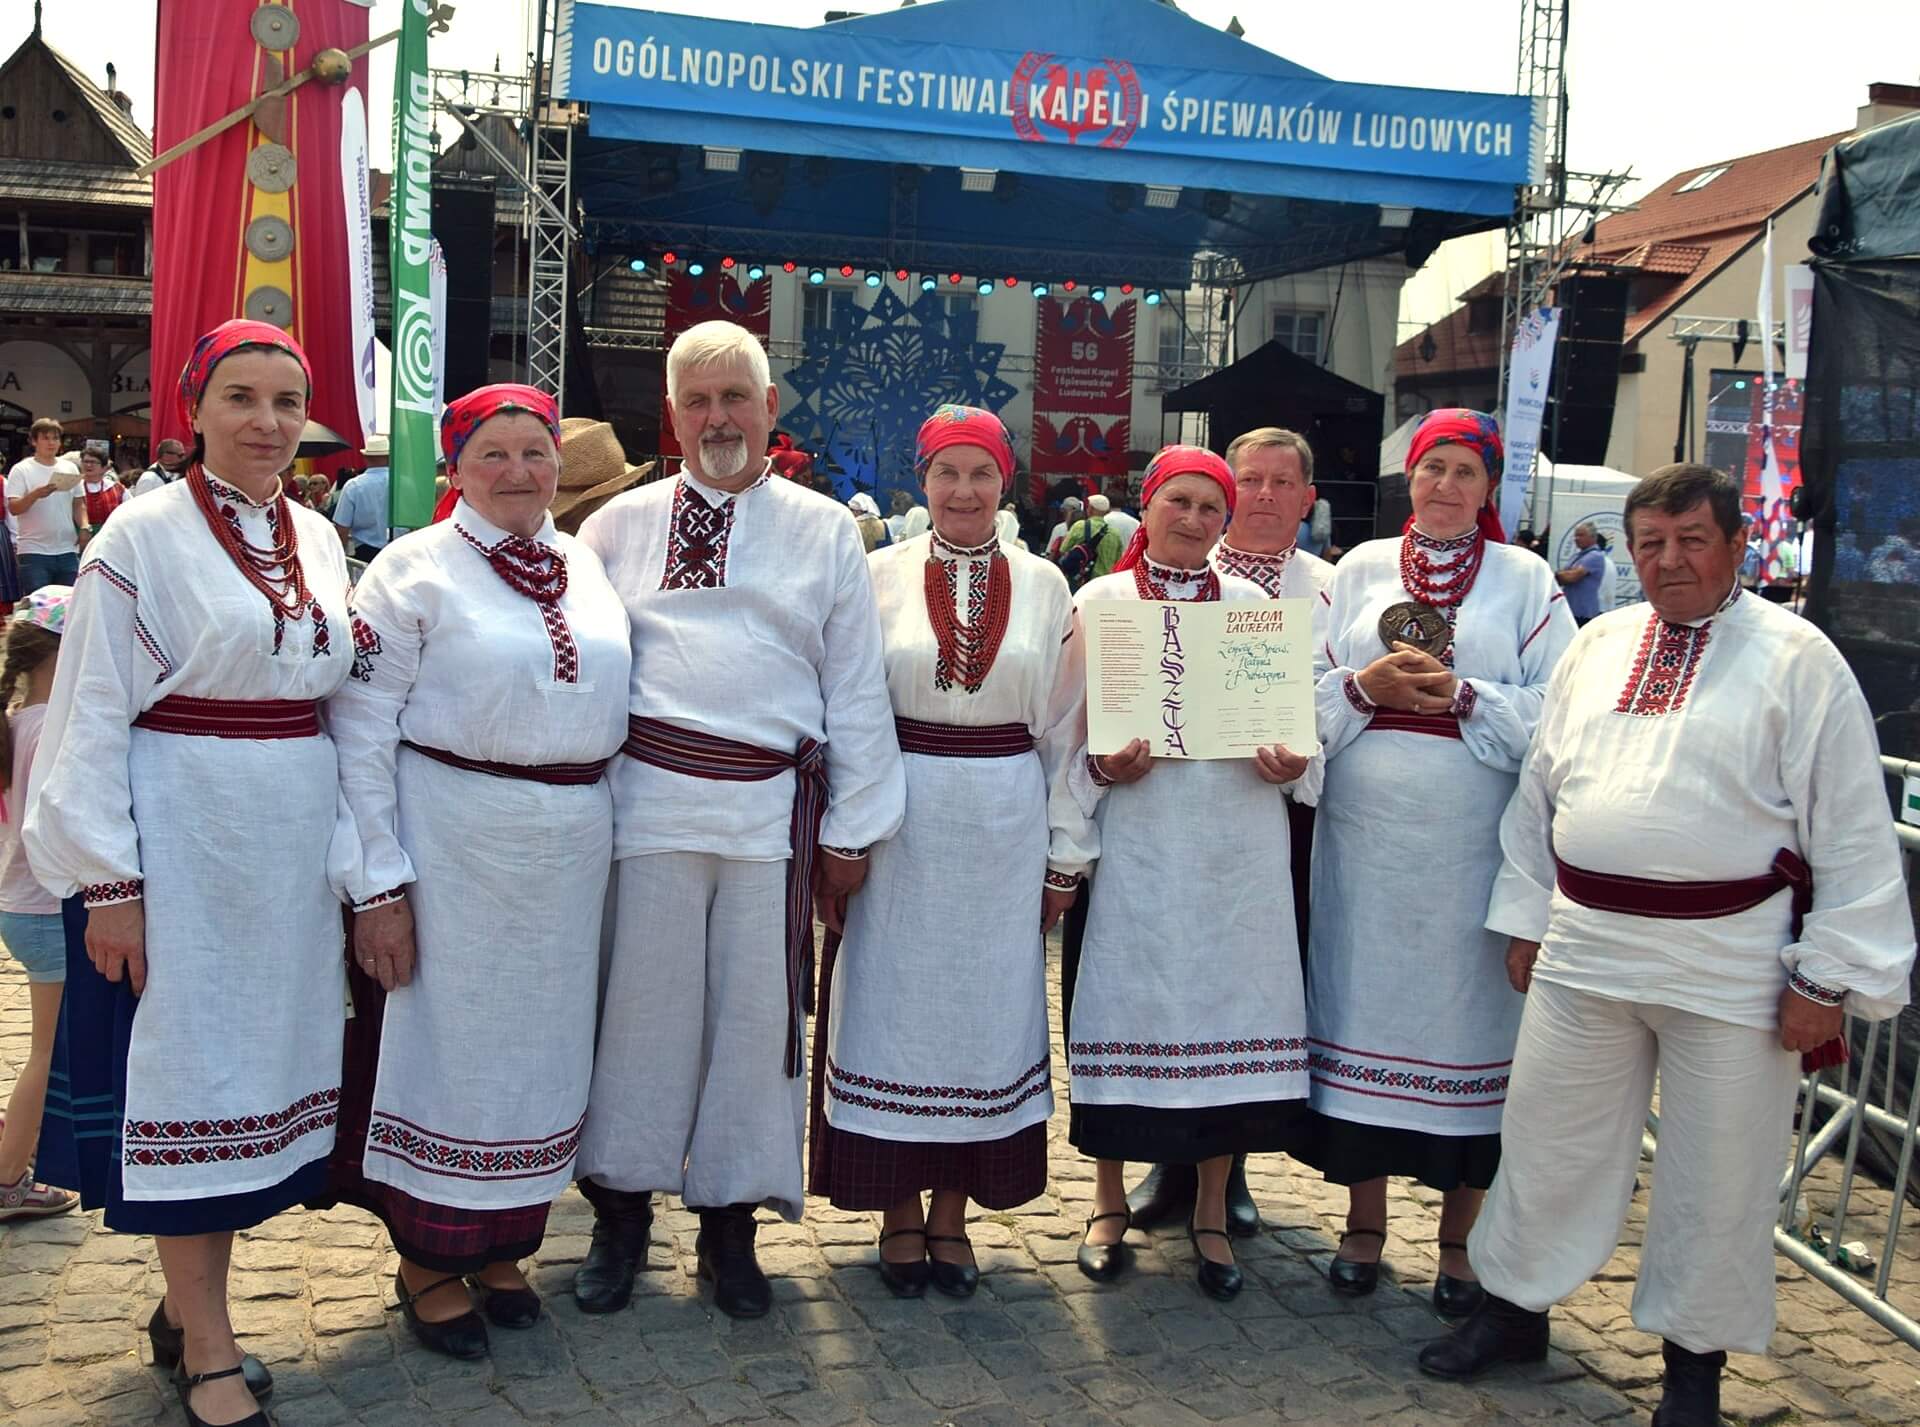 Zespół "Rodyna" zdobył "Basztę" - główną nagrodę 56. Ogólnopolskiego Festiwalu Kapel i Śpiewaków Ludowych w Kazimierzu Dolnym. Źródło fot.: archiwum zespołu "Rodyna".